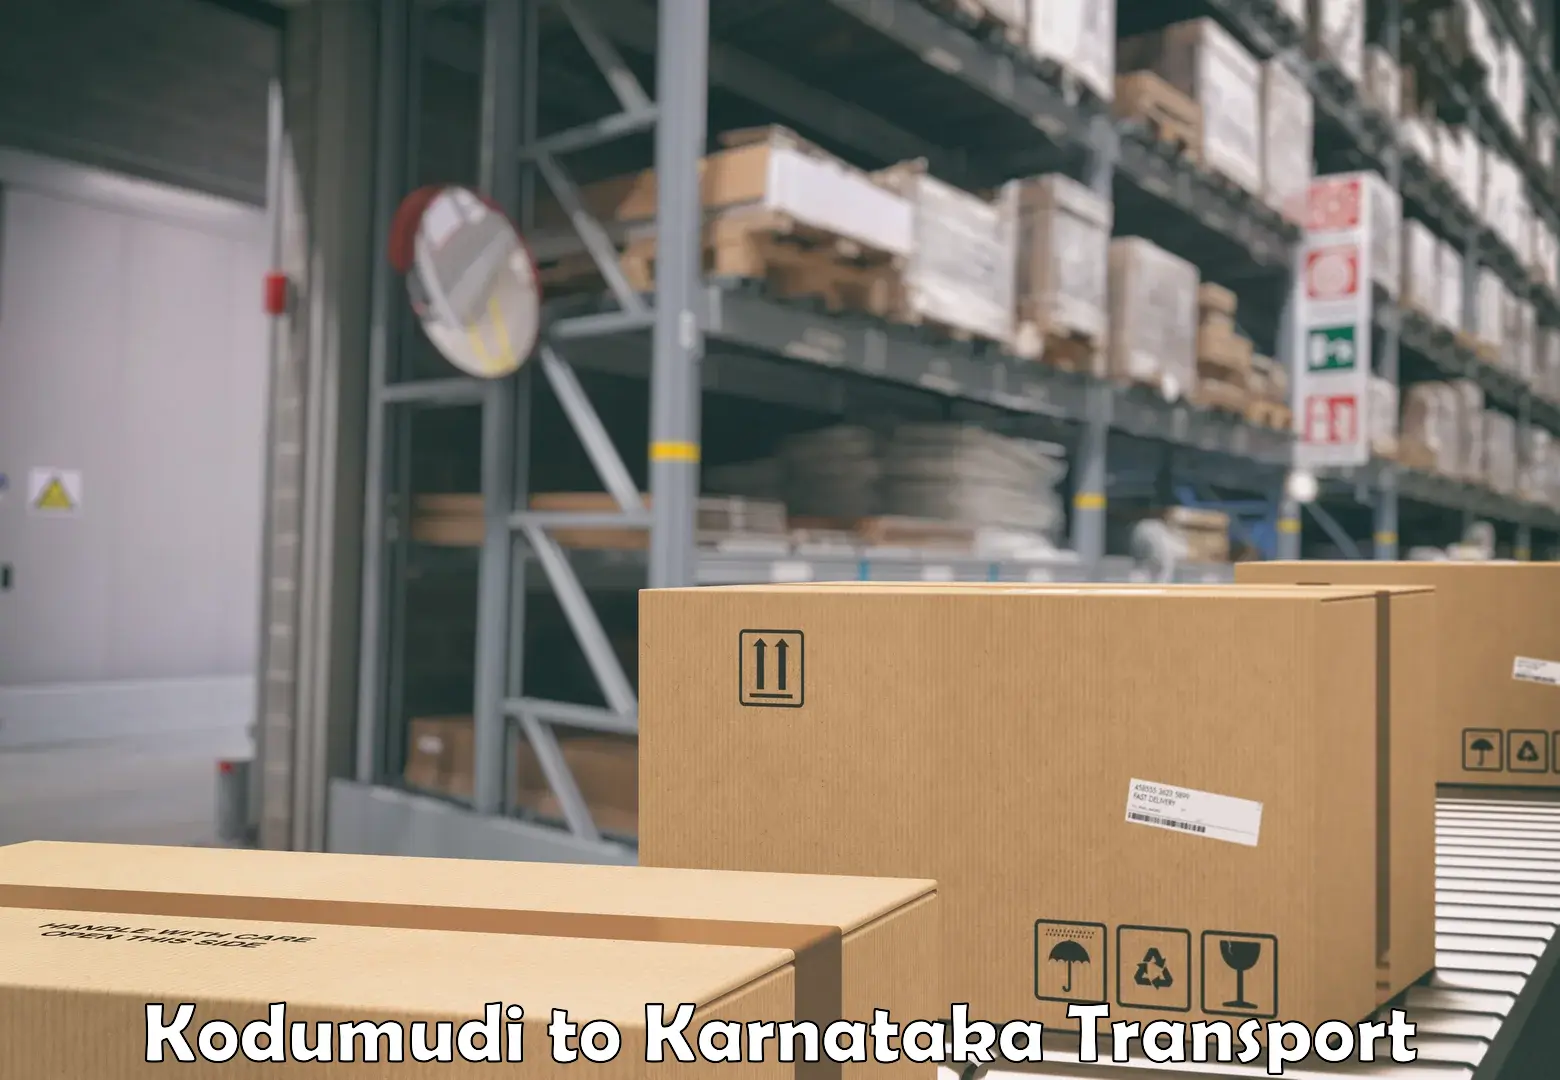 Cargo transportation services Kodumudi to Bangarapet